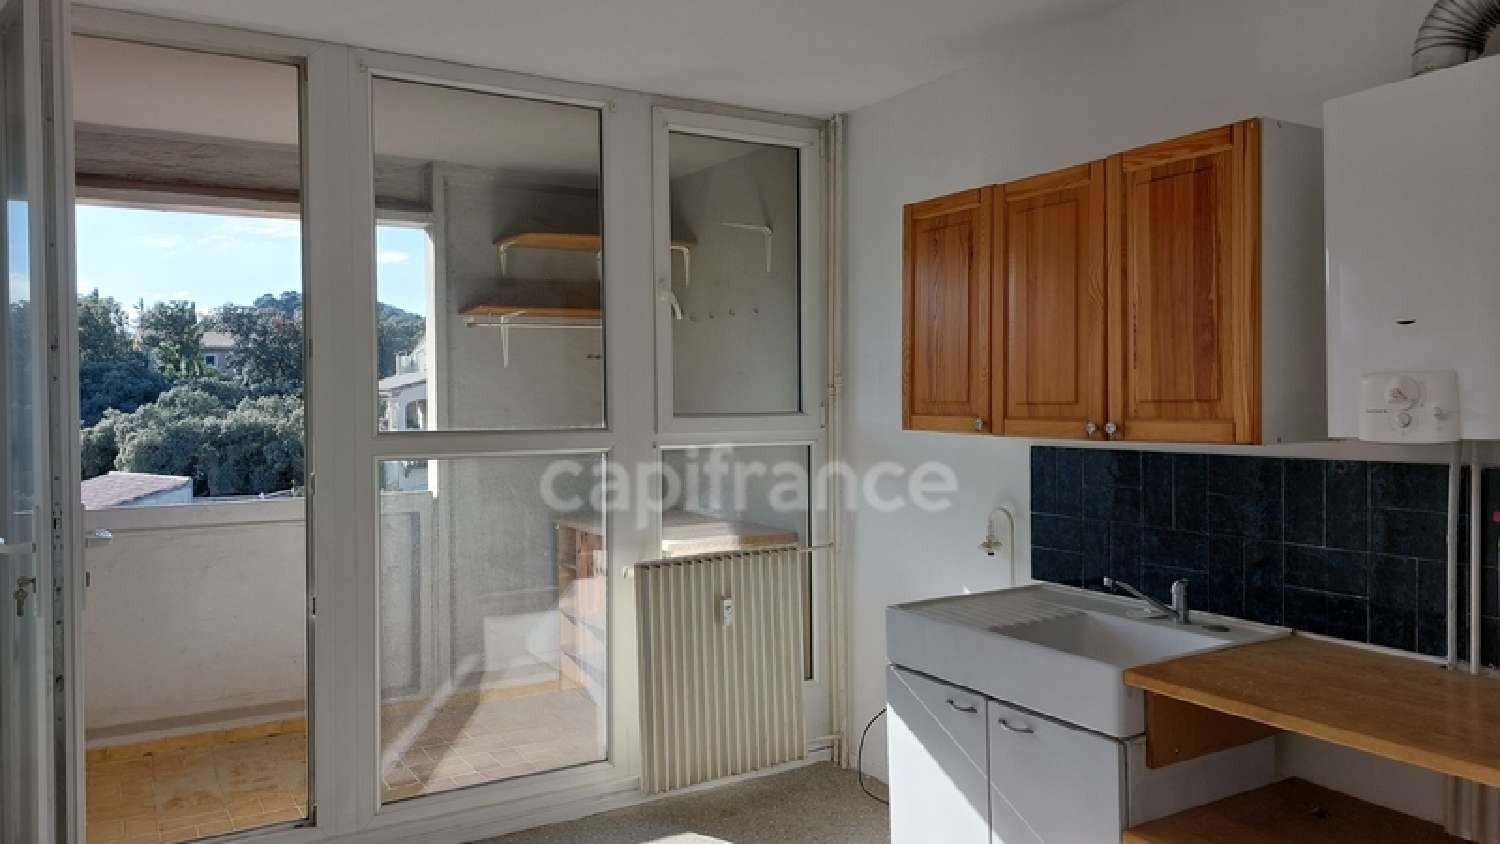  for sale apartment Villeneuve-lès-Avignon Gard 2